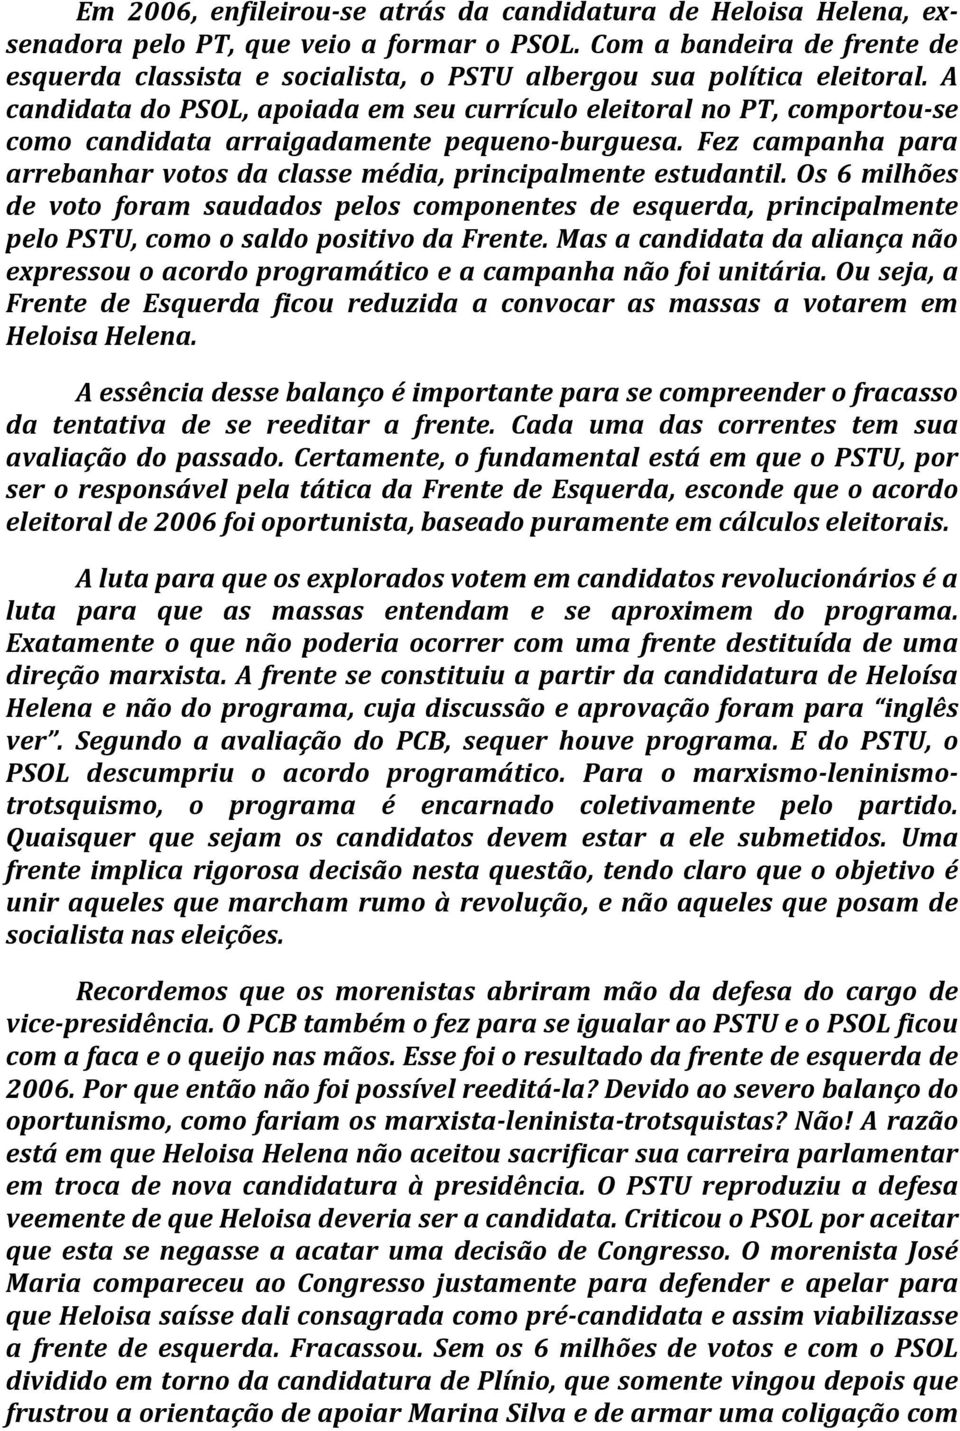 A candidata do PSOL, apoiada em seu currículo eleitoral no PT, comportou-se como candidata arraigadamente pequeno-burguesa.